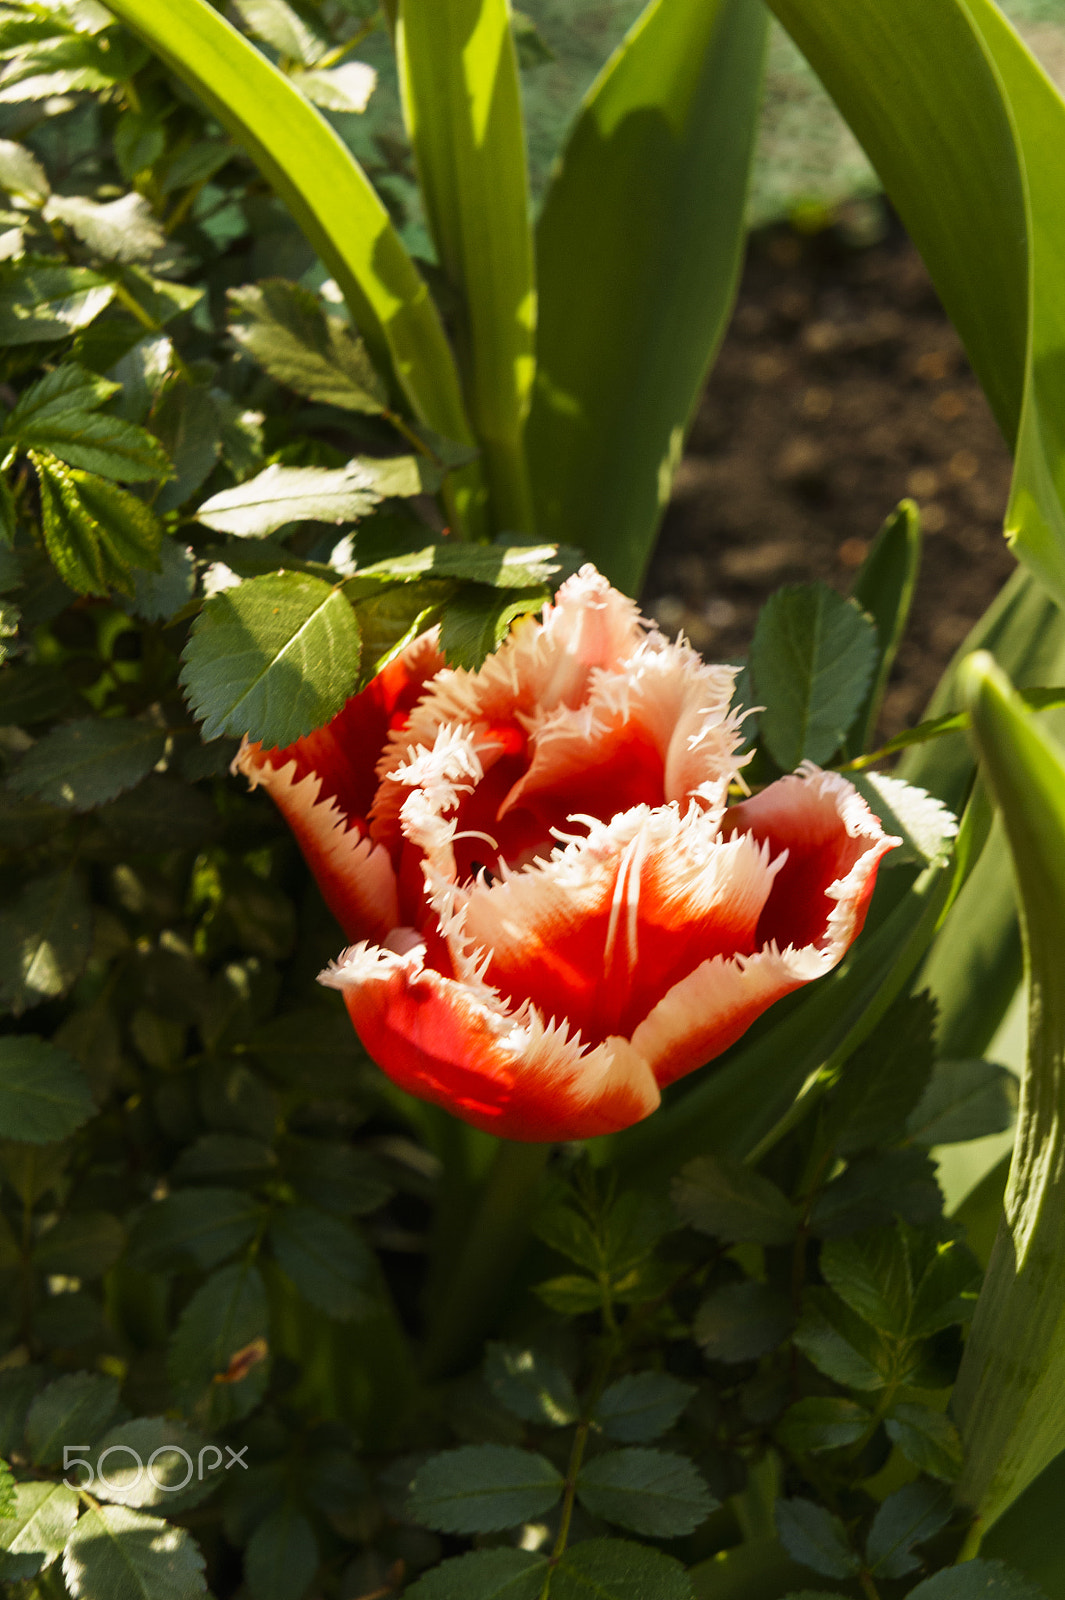 Sony Alpha NEX-5 sample photo. Tulip with fringe photography